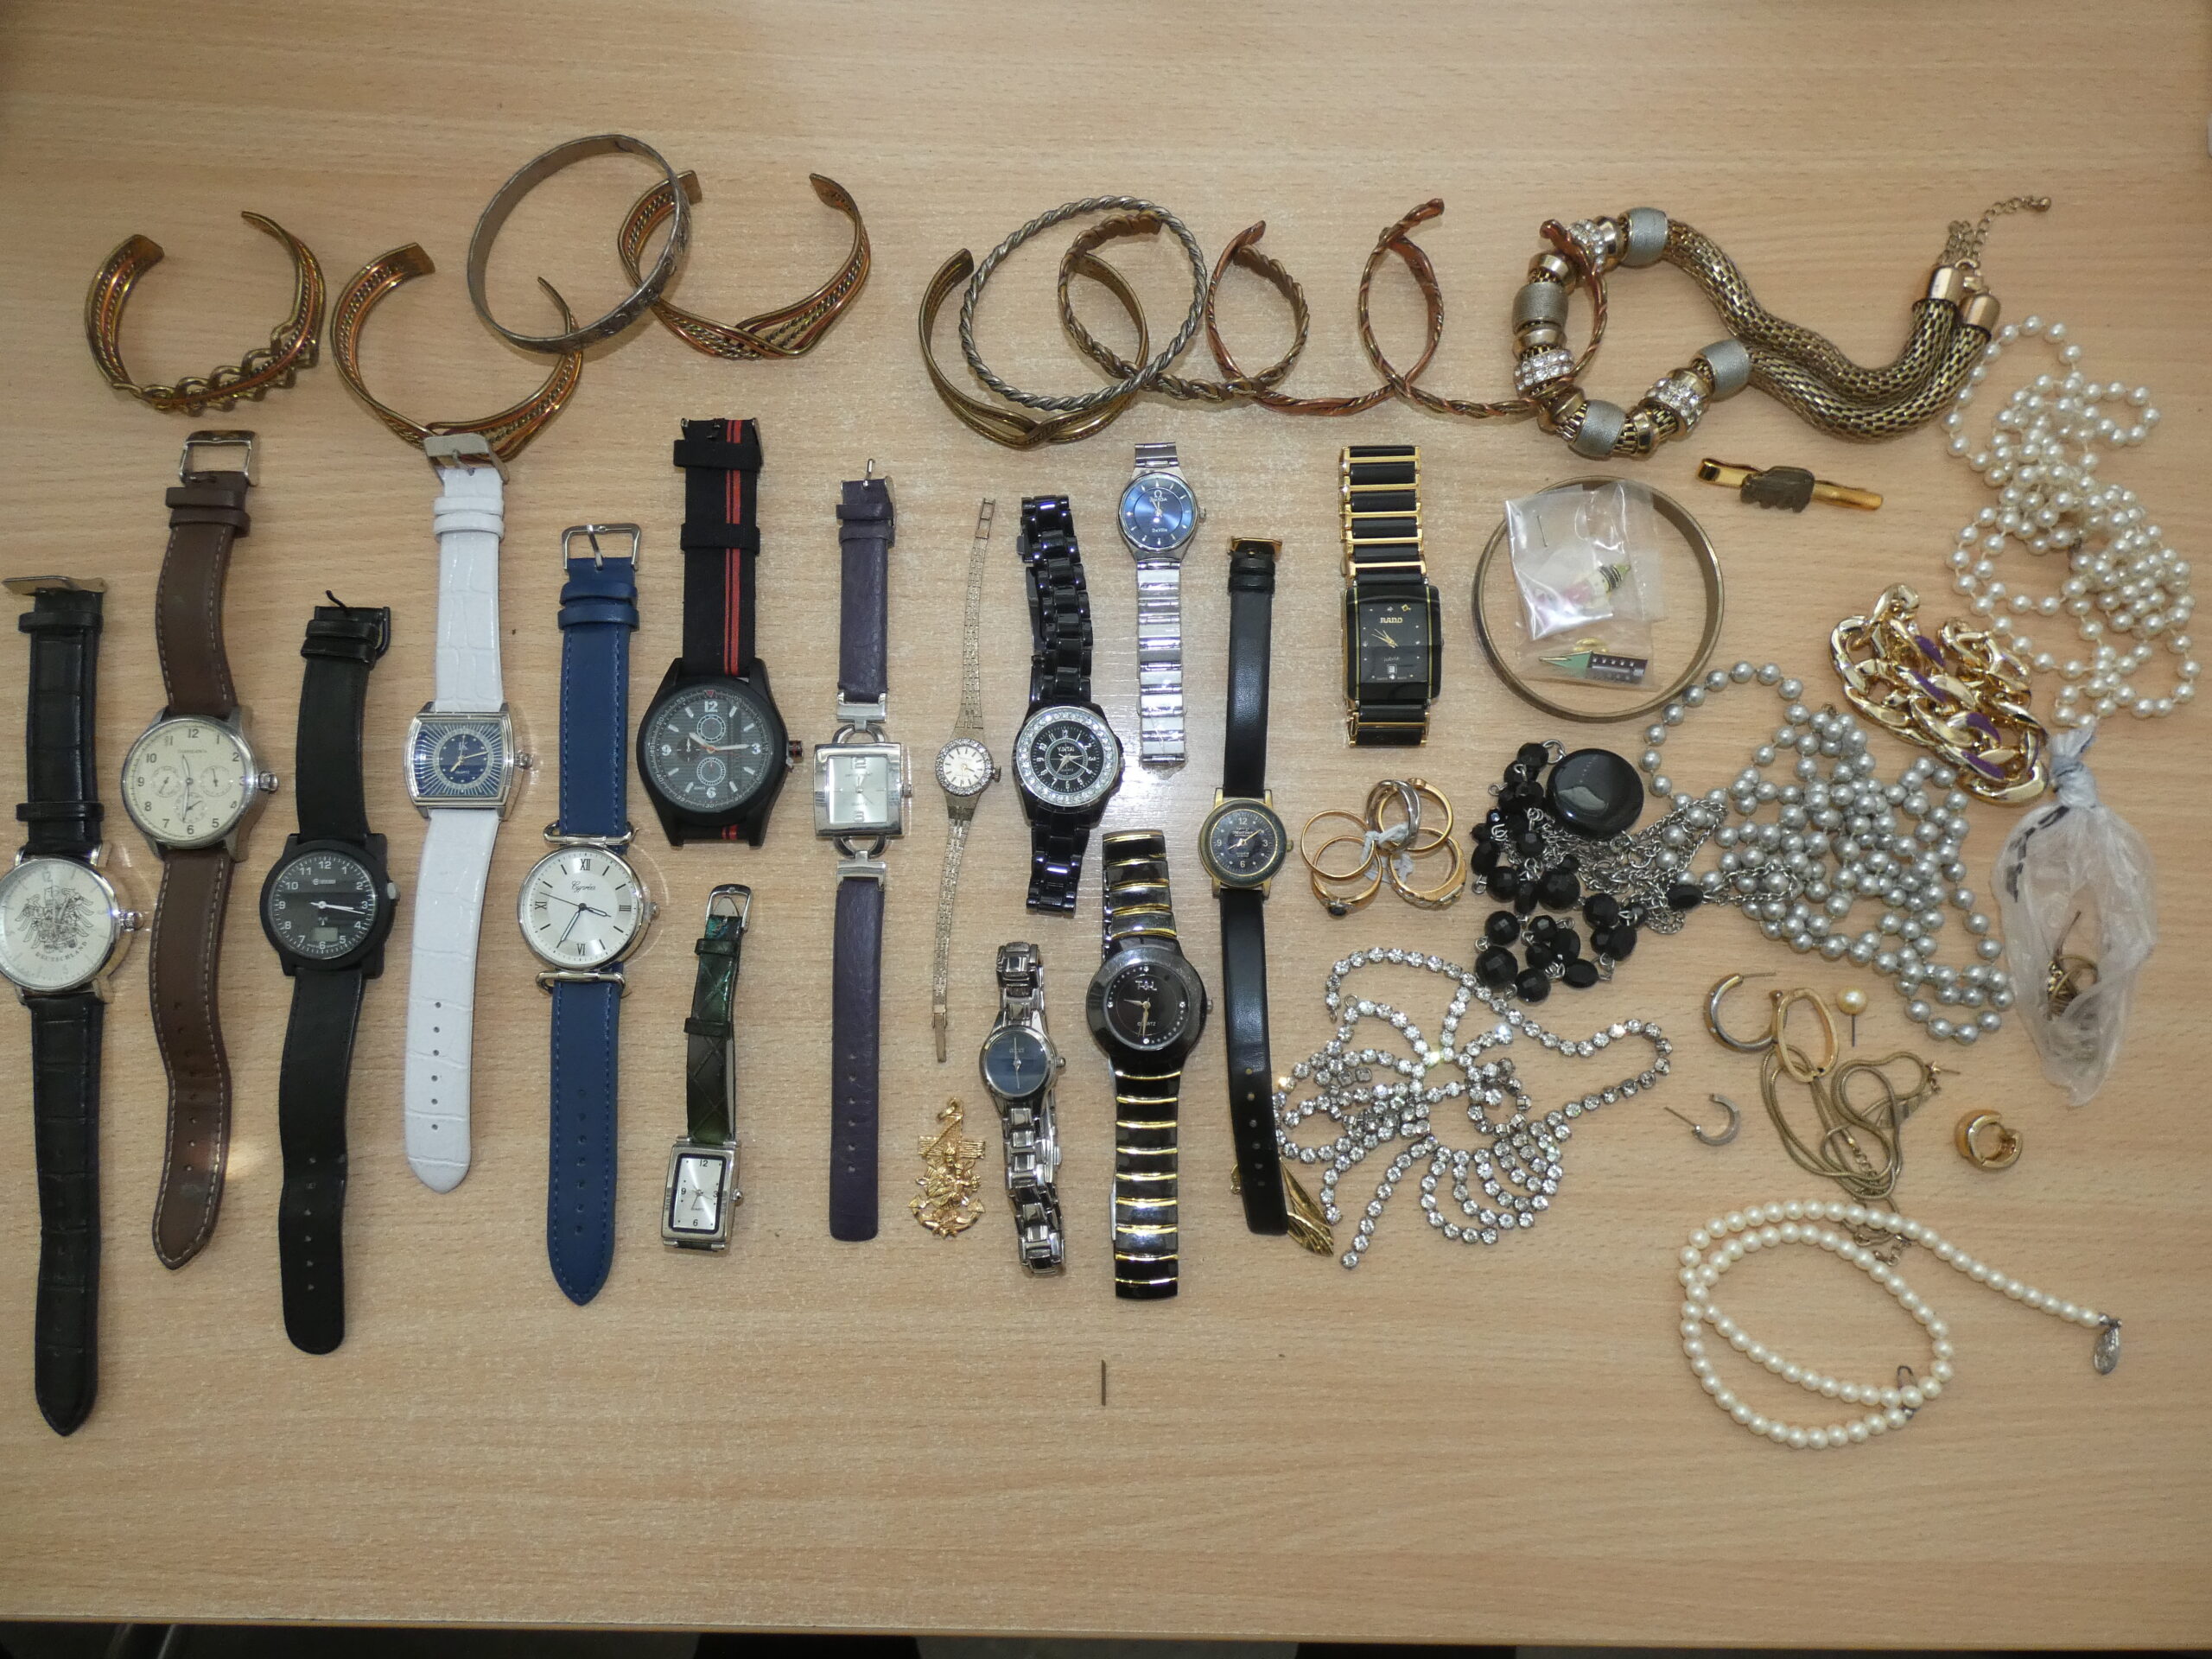 Schmuck in Mülleimer in Cuxhaven gefunden: Armbanduhren, Ketten und Armreifen